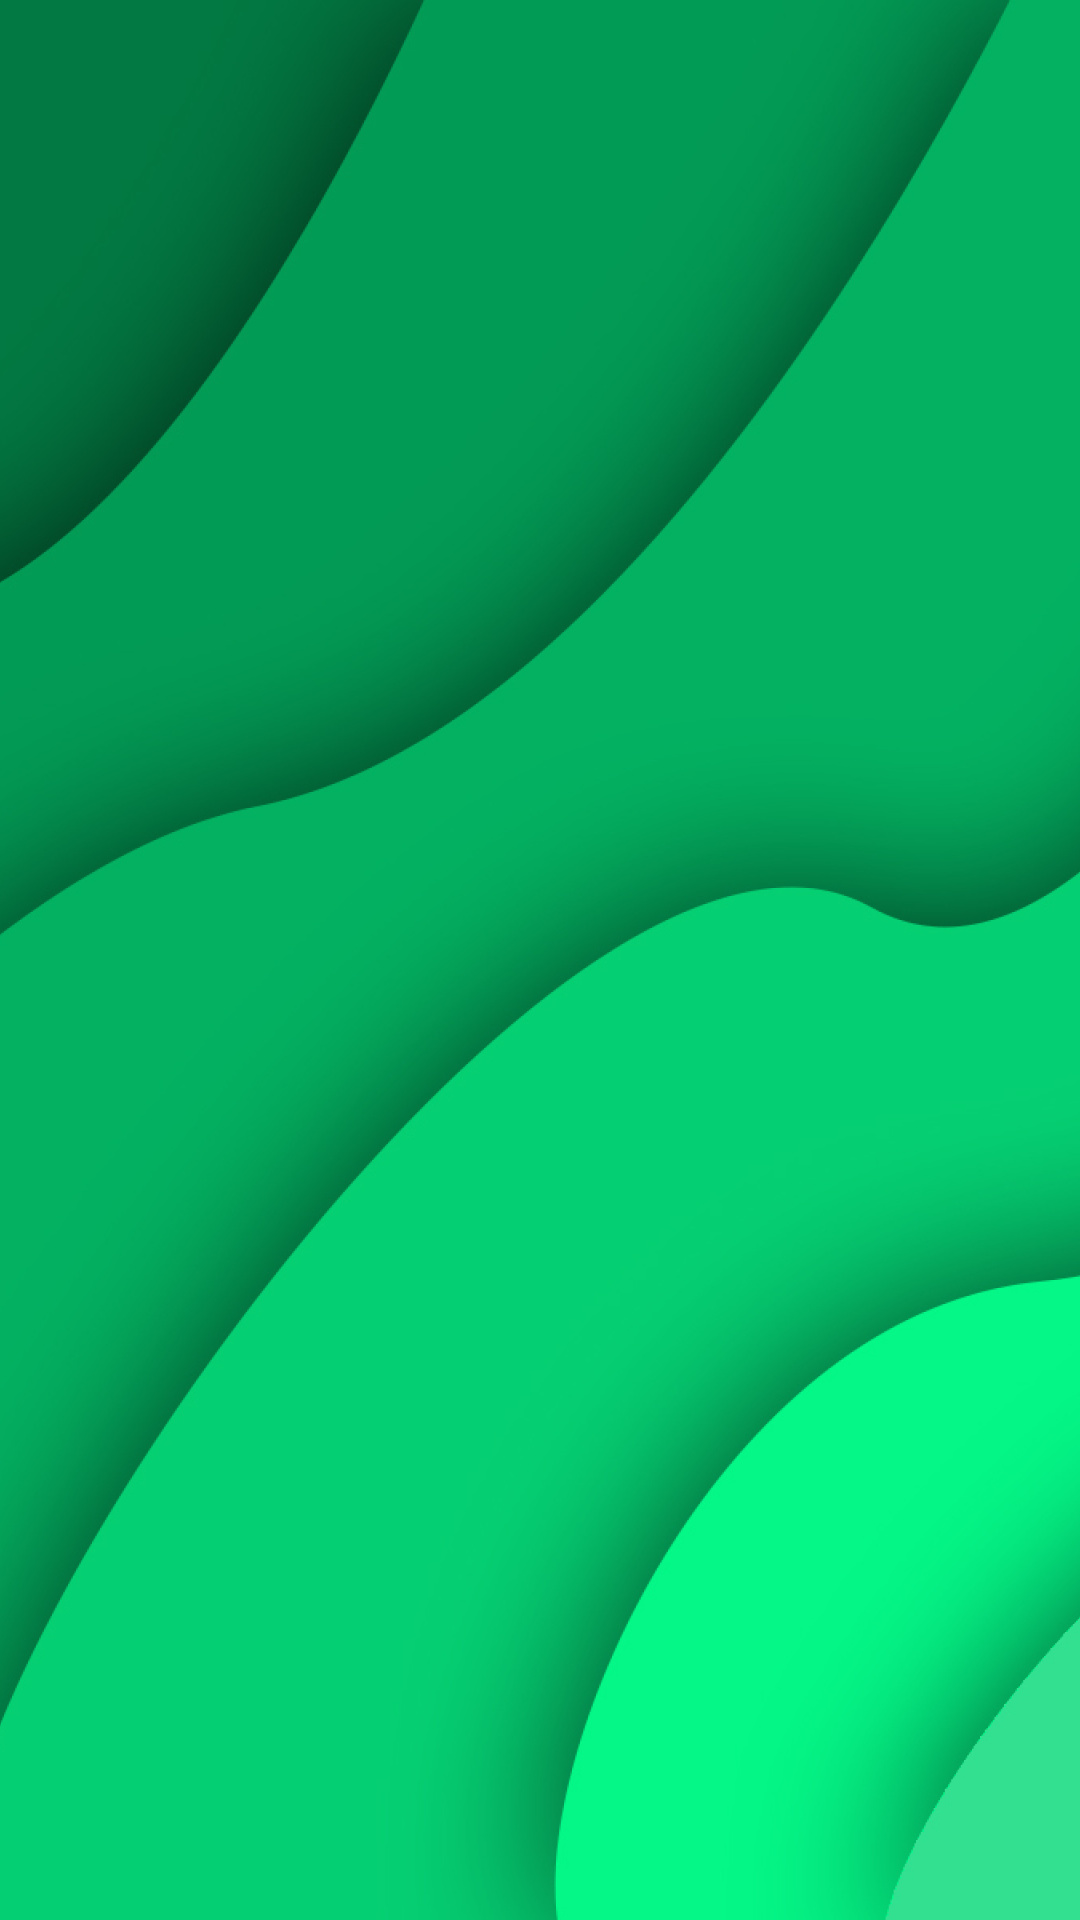 Das Green Waves Wallpaper 1080x1920